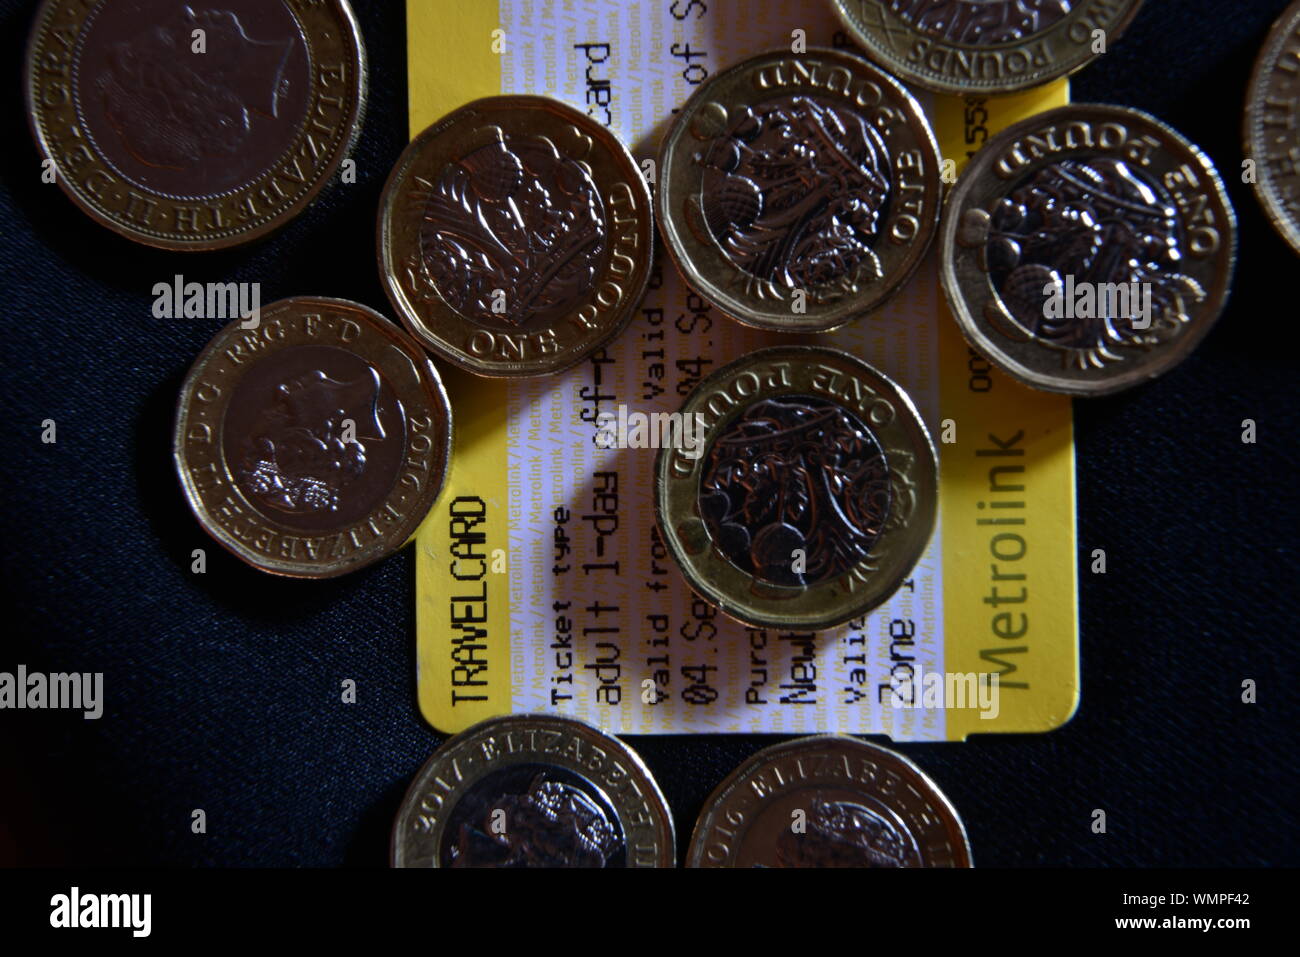 Manchester biglietto del tram e delle monete metalliche in euro Foto Stock